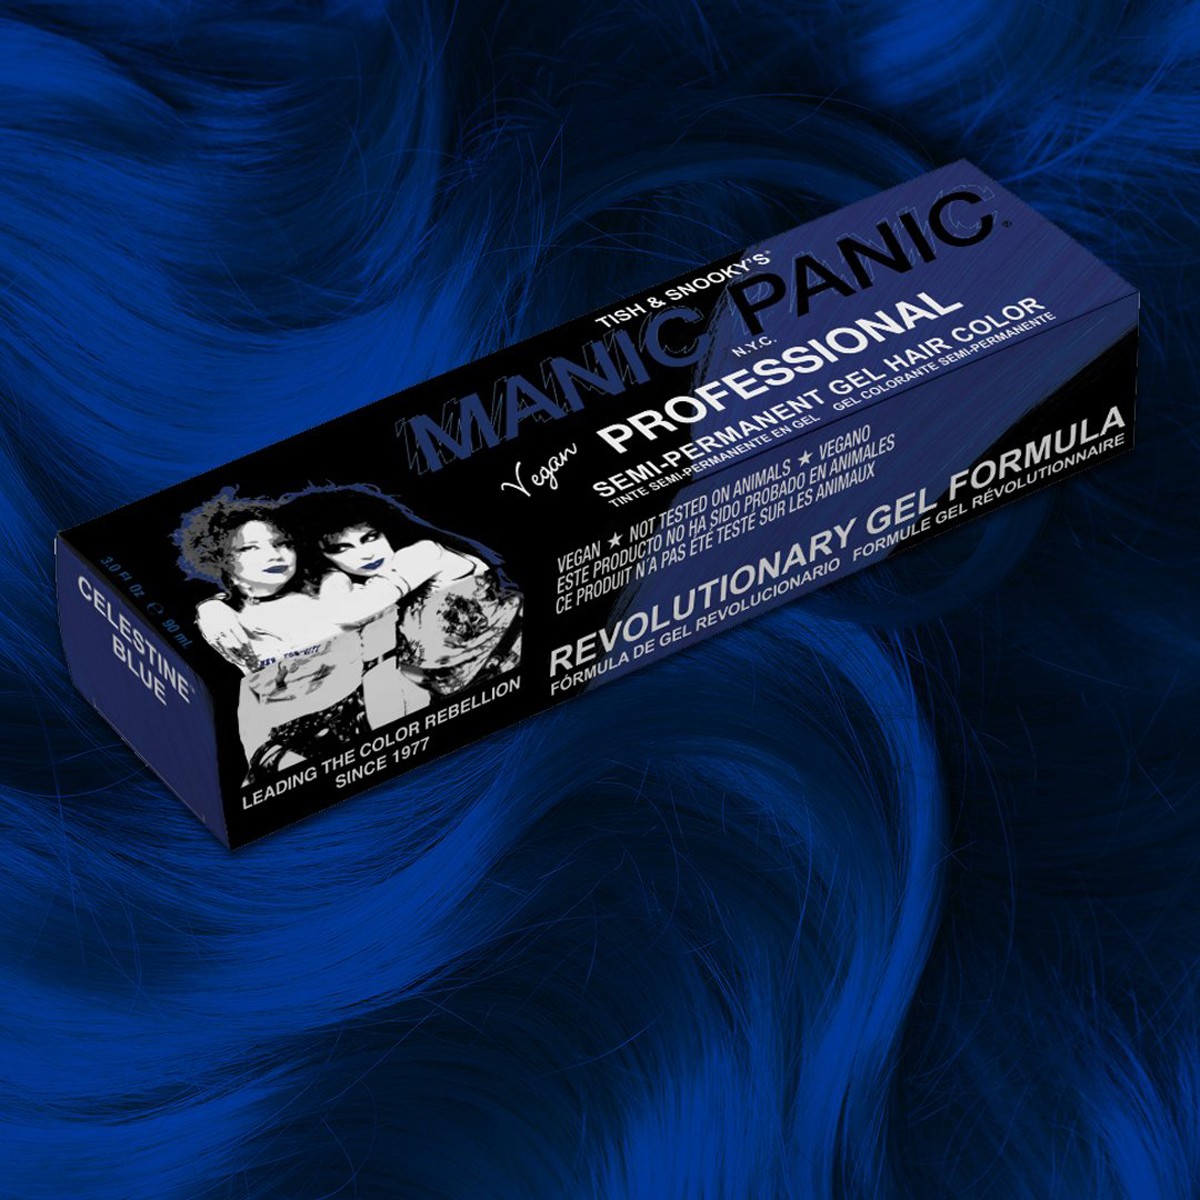 Manic Panic Profesyonel Celestine Blue Jel Saç Boyası J03